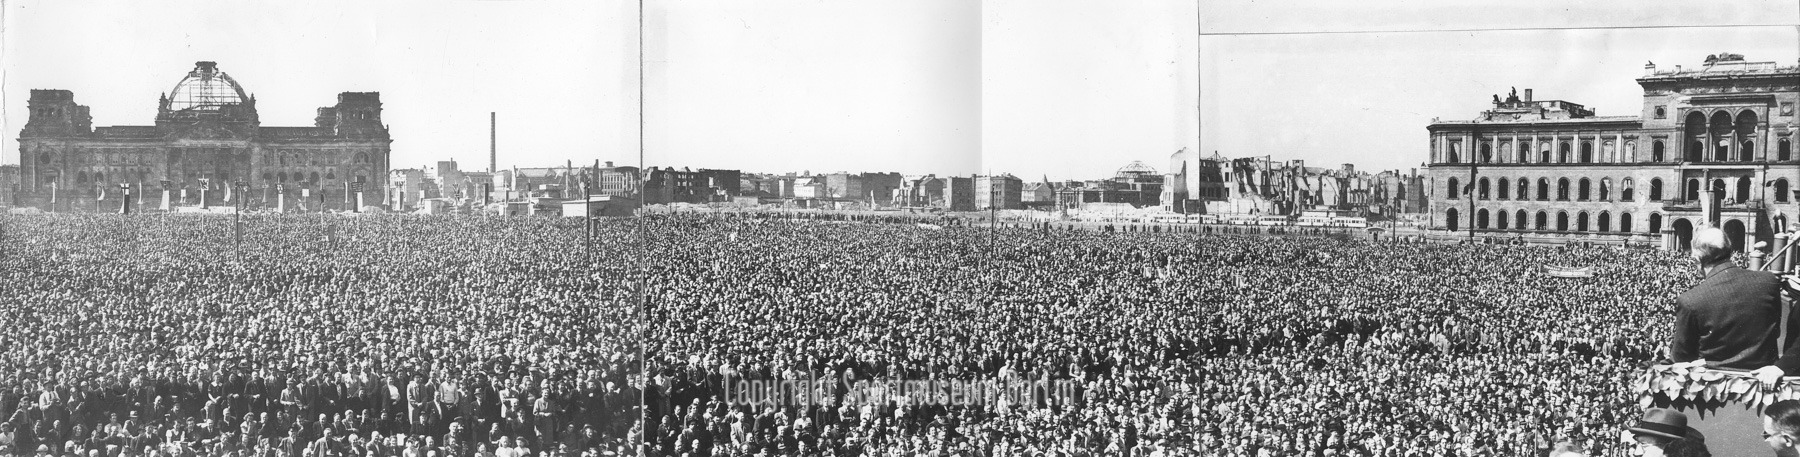 Schwarz-Weiß-Fotos montiert: Versammlung von tausenden Menschen. Im Vordergrund rechts Redner vor Mikrofonen. Im Hintergrund zerbombte Häuser, u. a. der Reichstag.